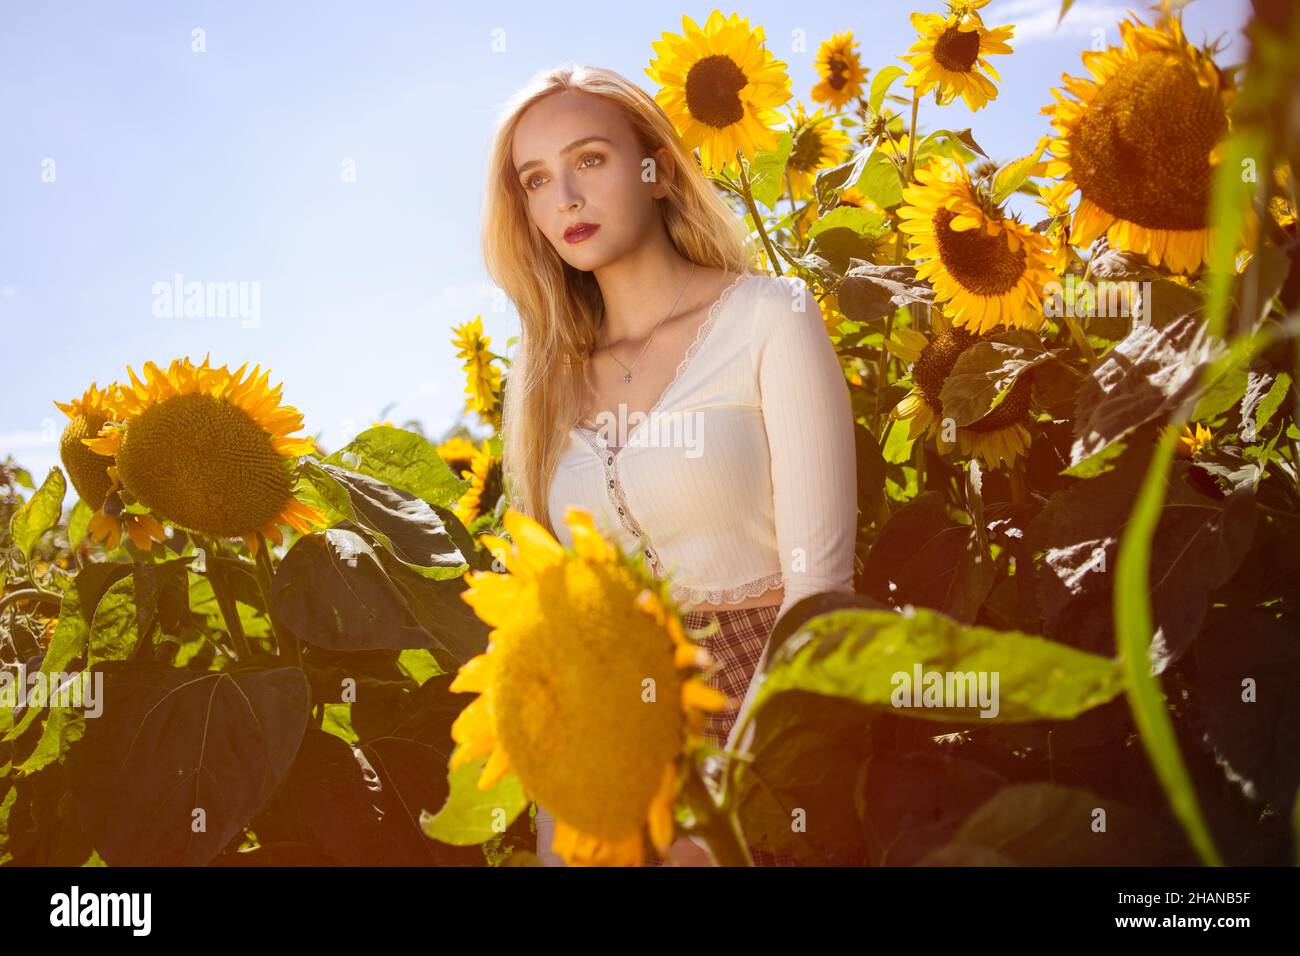 Belle giovani donne ( 22 anni) con capelli biondi lunghi si pone in un campo di girasole in una calda giornata di sole Foto Stock